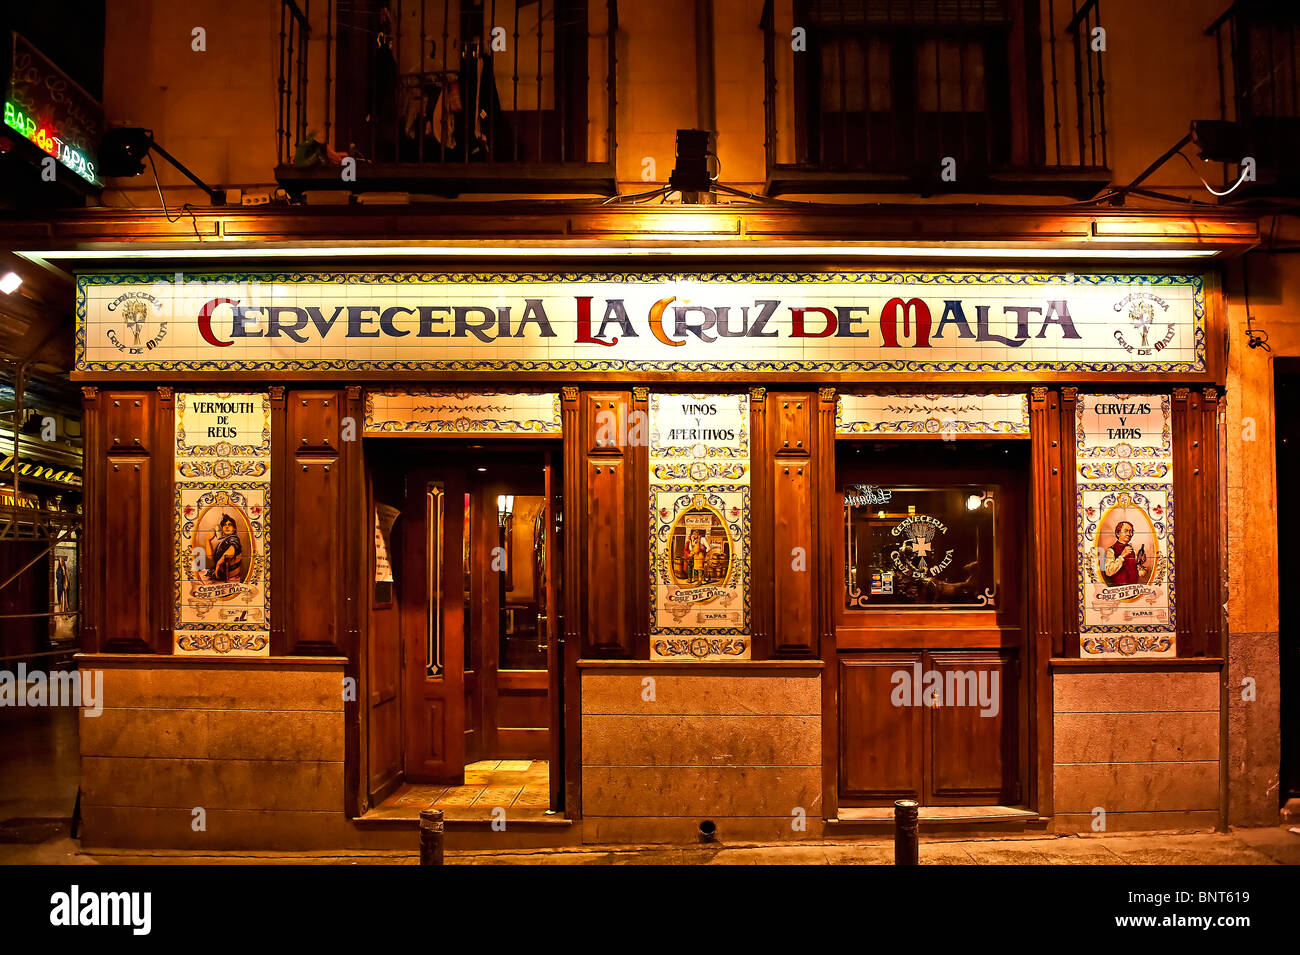 Cerveceria La Cruz de Malta, Madrid, Spanien Stockfoto